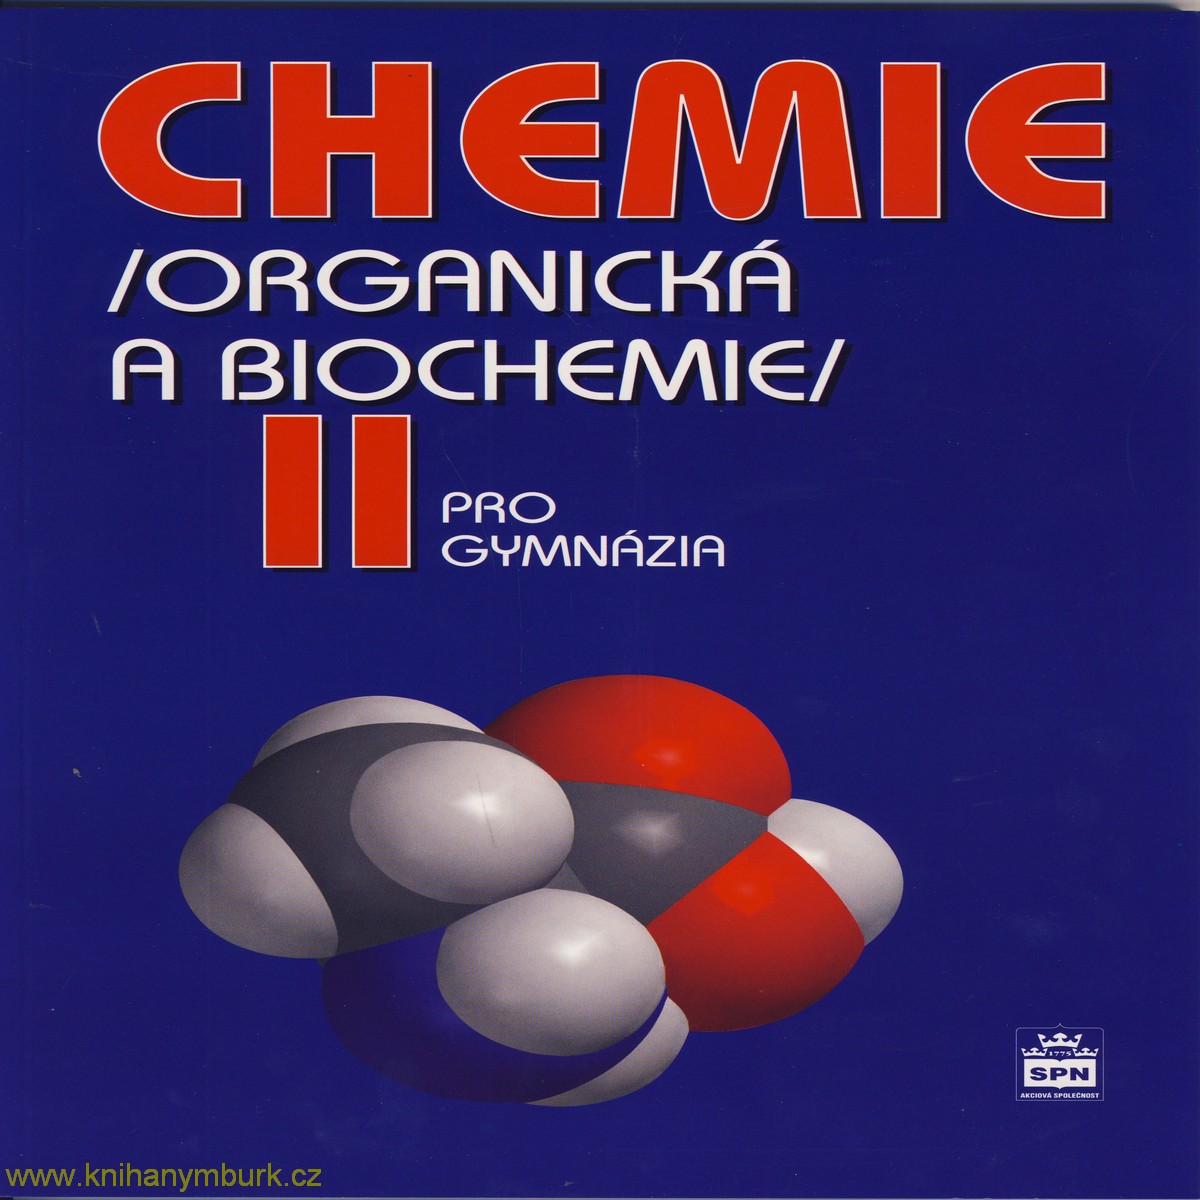 Chemie 2 organická a biochmie